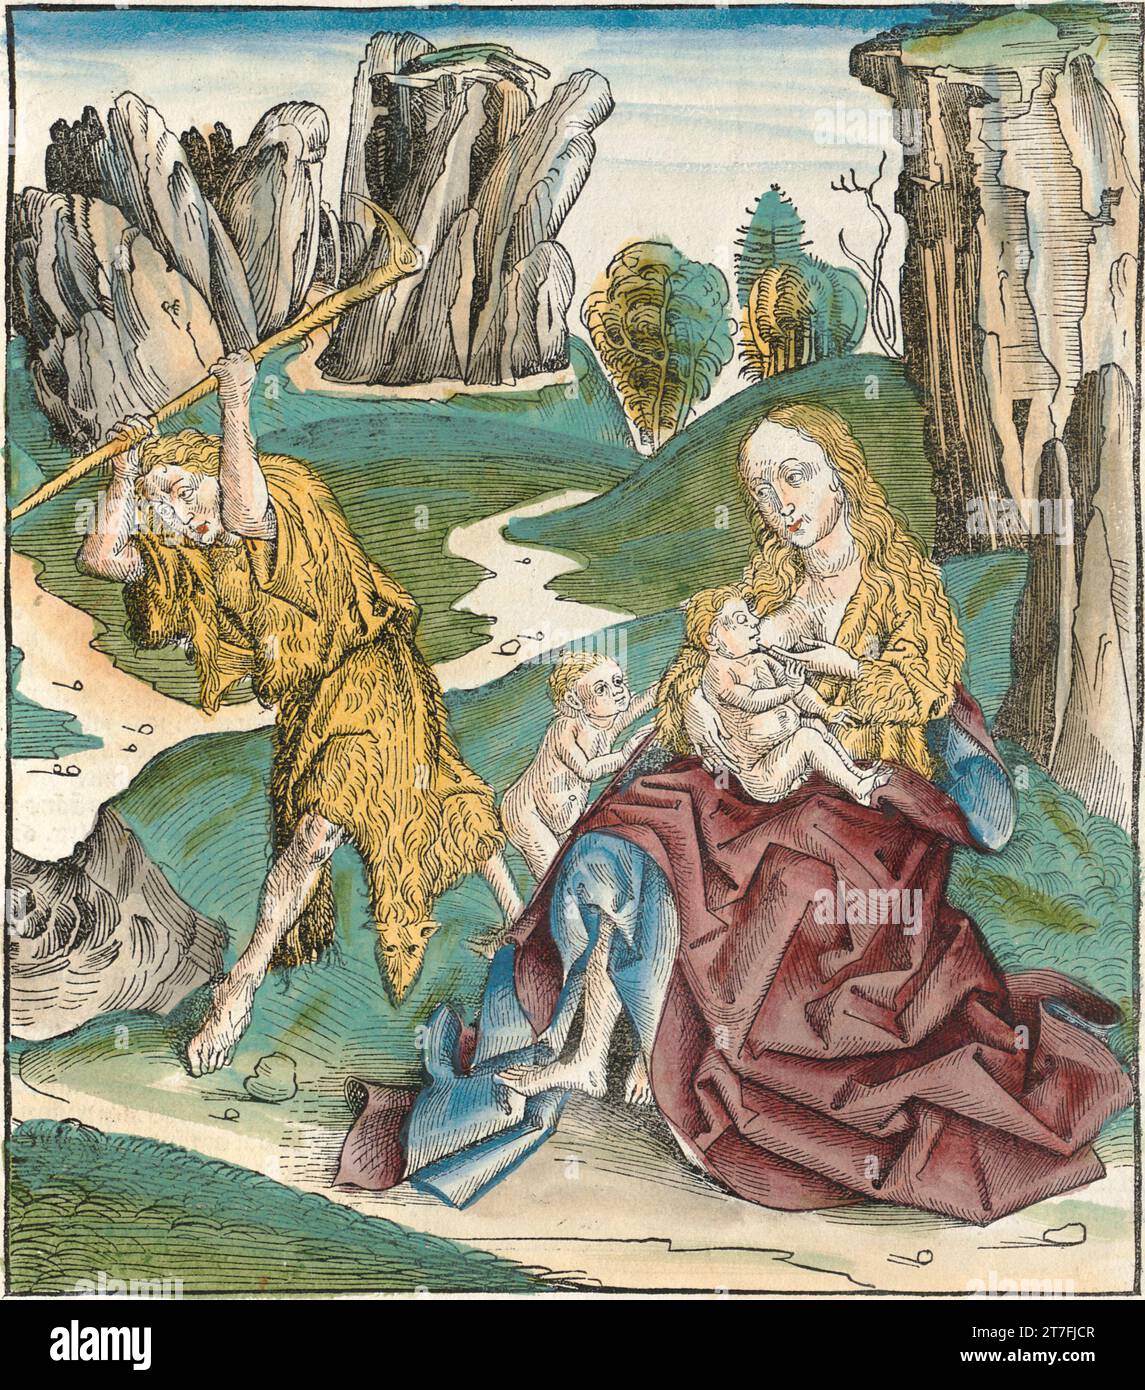 Adam et Eve Raising Caïn et Abel - Illustration de la chronique de Nuremberg, 1493. Illustré par Wilhelm Pleydenwurff et Michael Wolgemut Banque D'Images